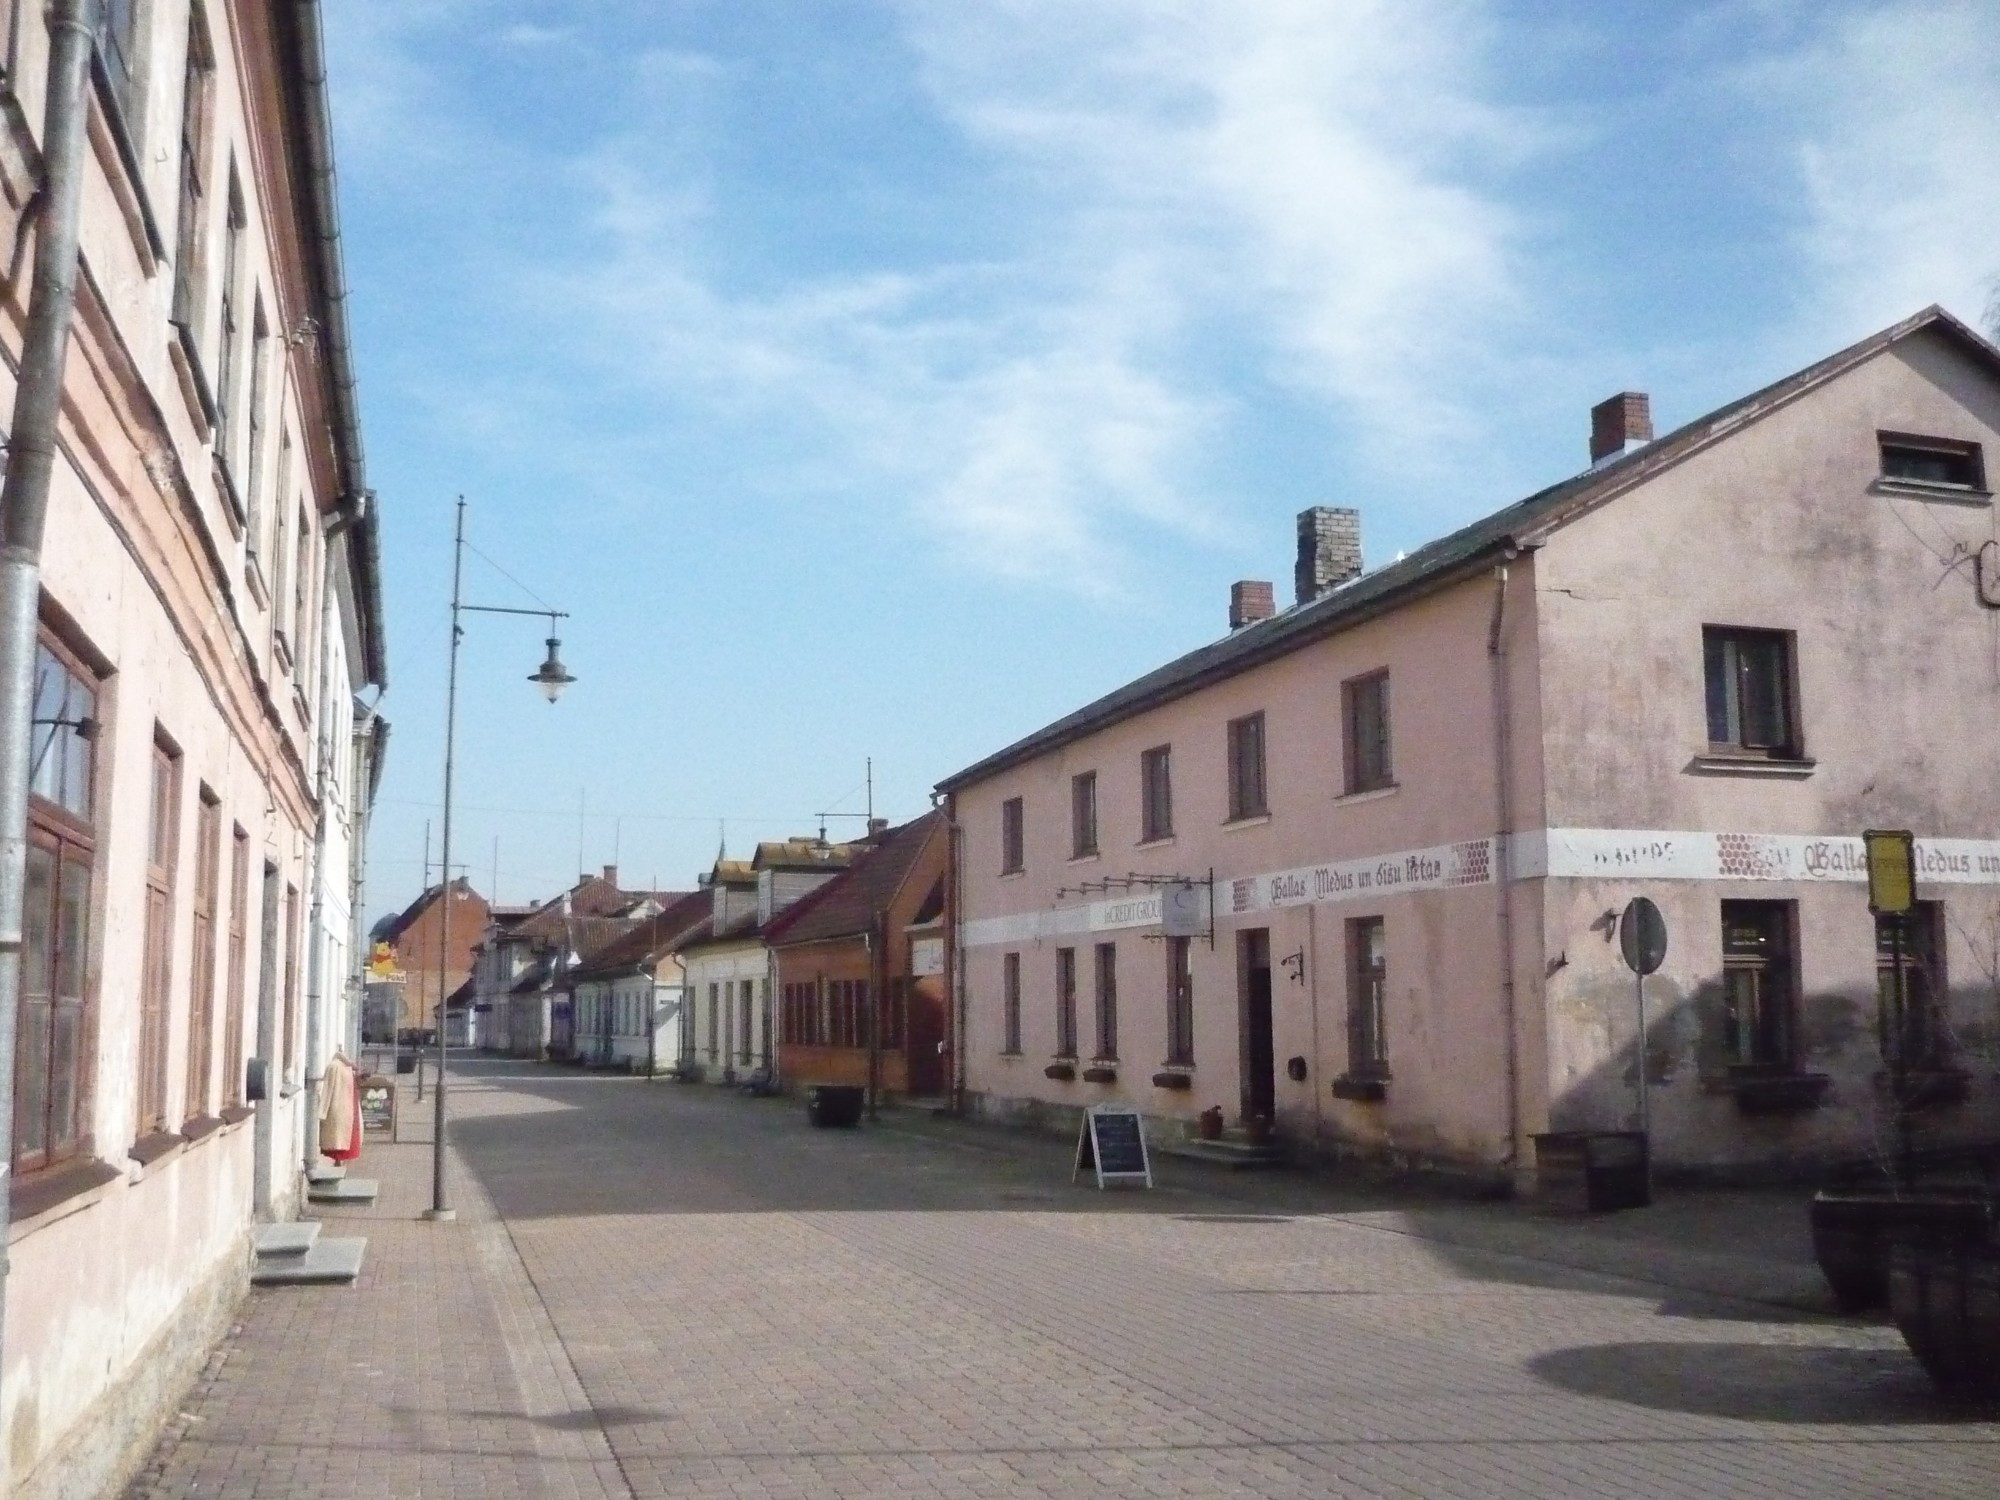 Kuldiga, Latvia